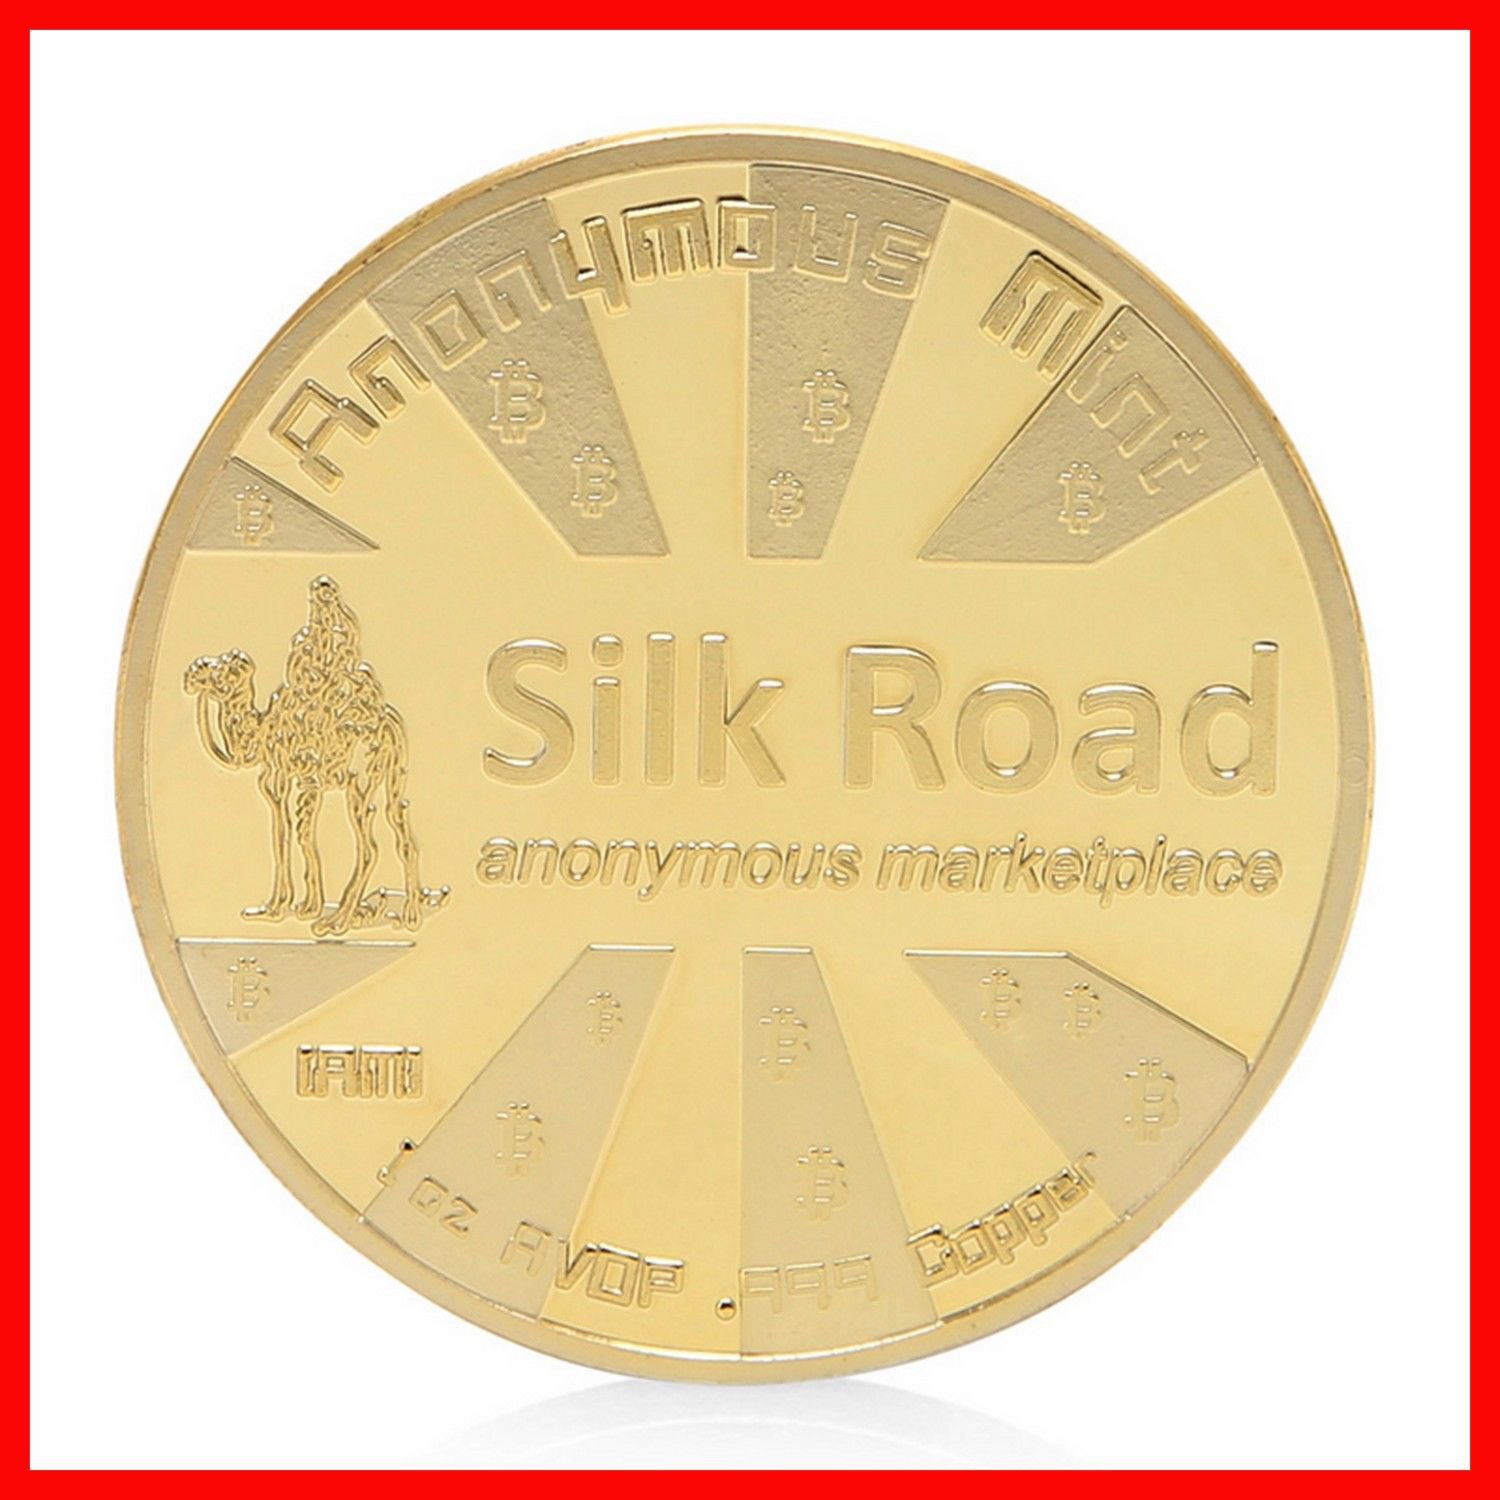 silk road coin crypto token